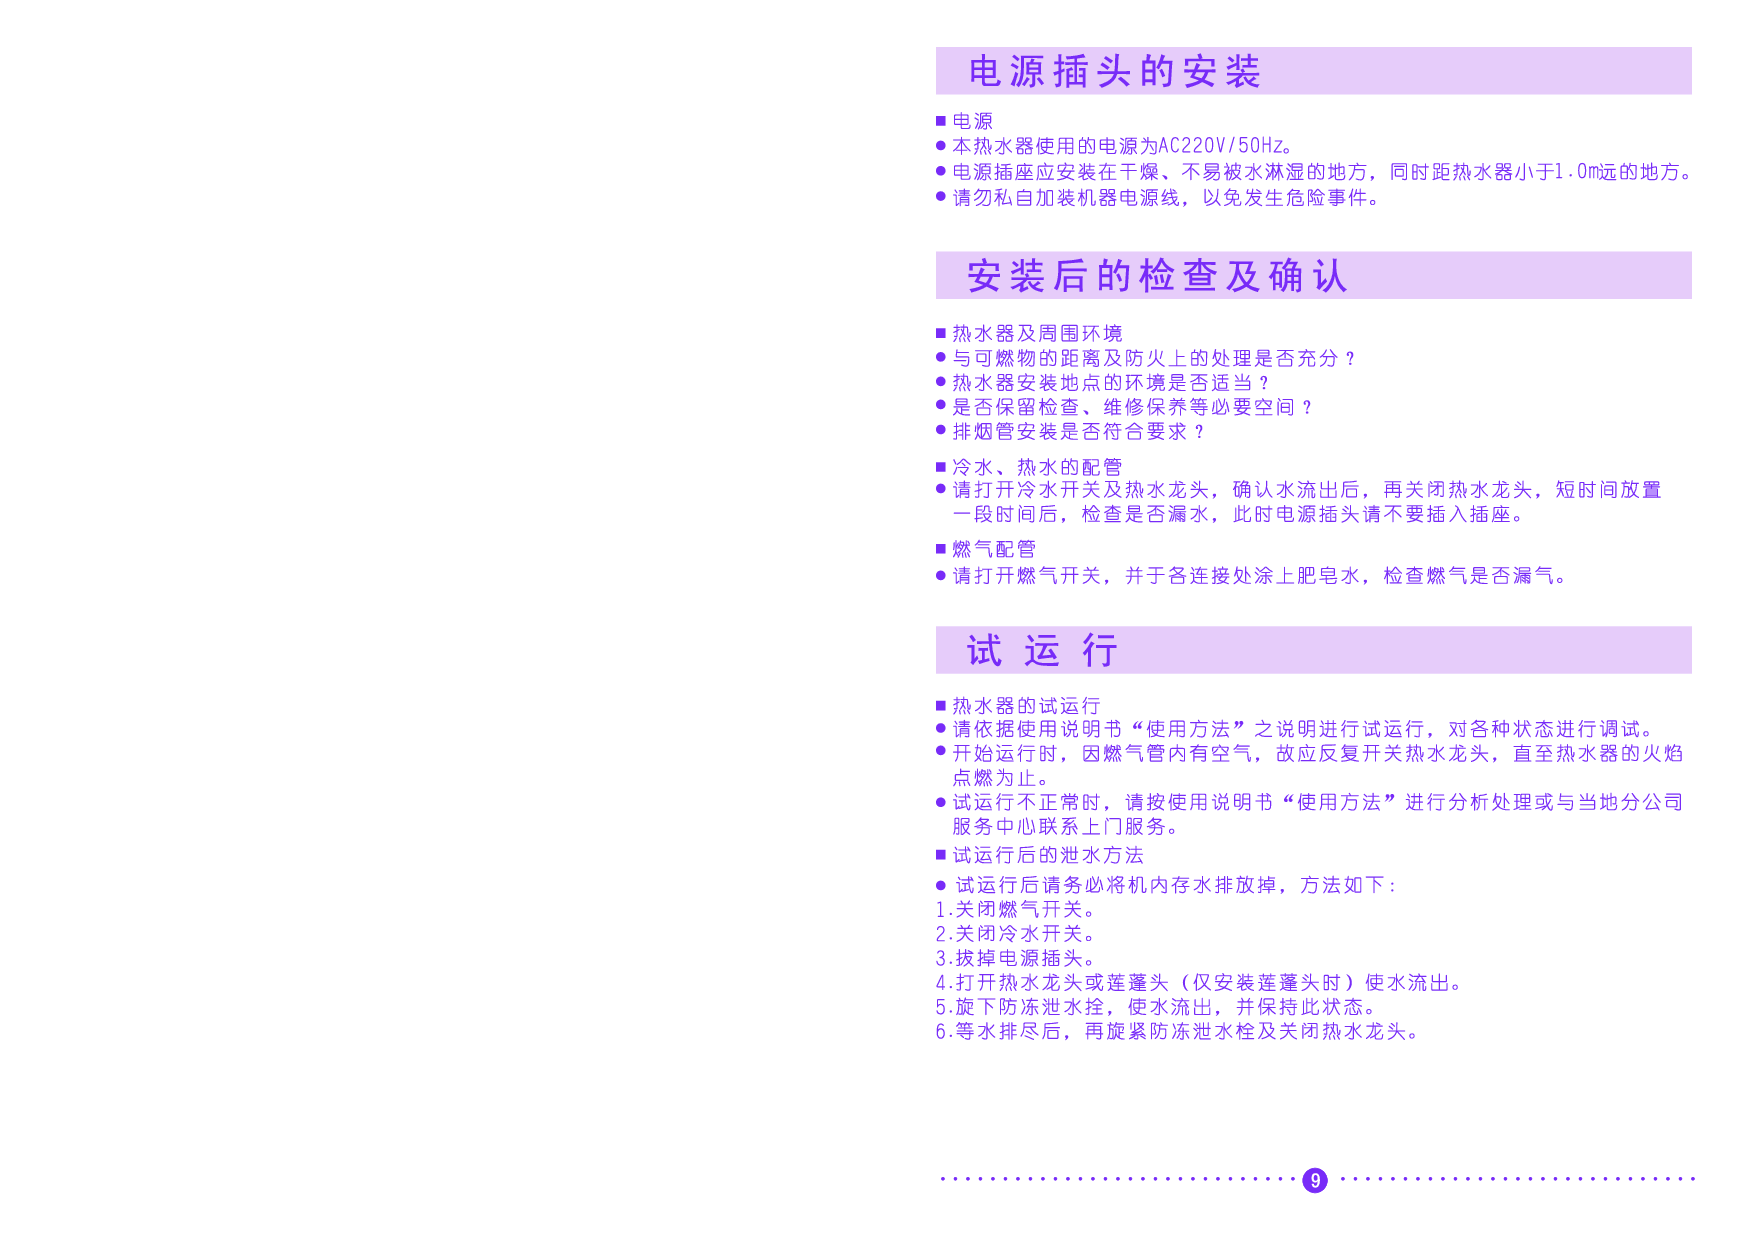 樱花 SAKURA JSQ12-B, SCH-06Q08 安装说明 第1页